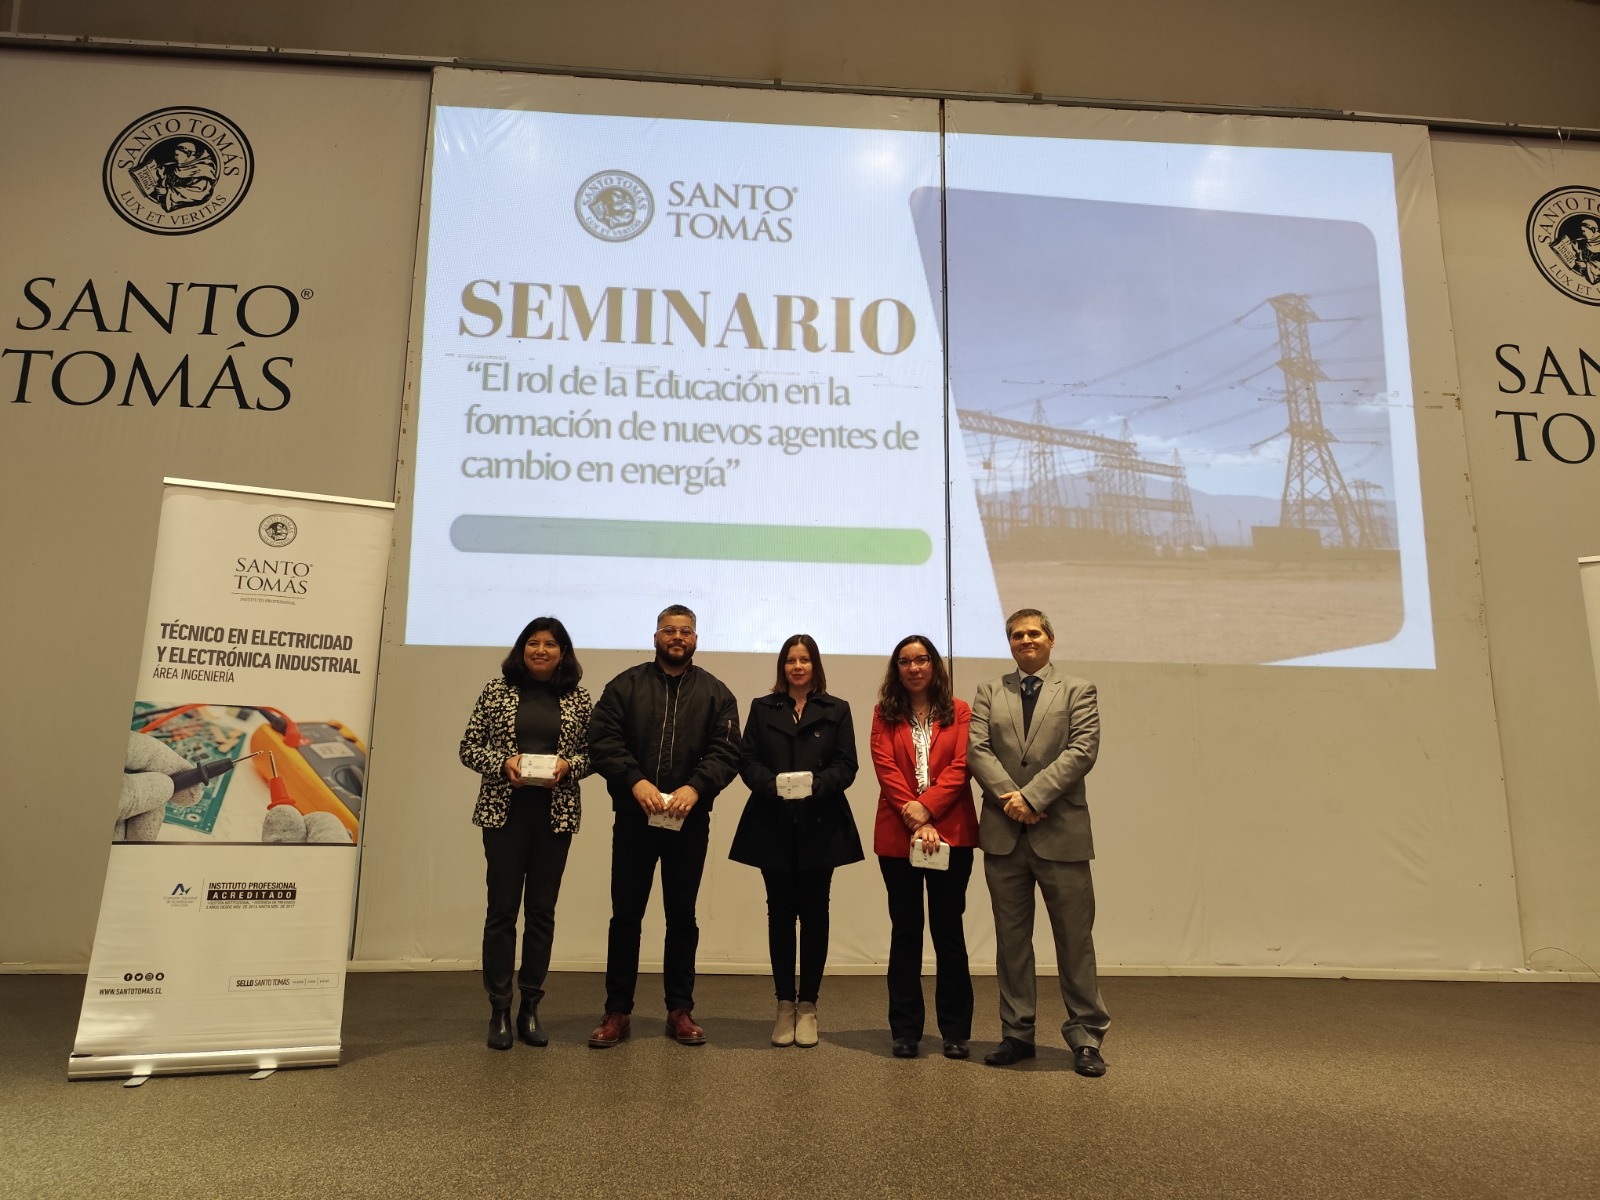 Seminario de Energía reunió a instituciones de Gobierno, de educación y empresas en Santo Tomás La Serena